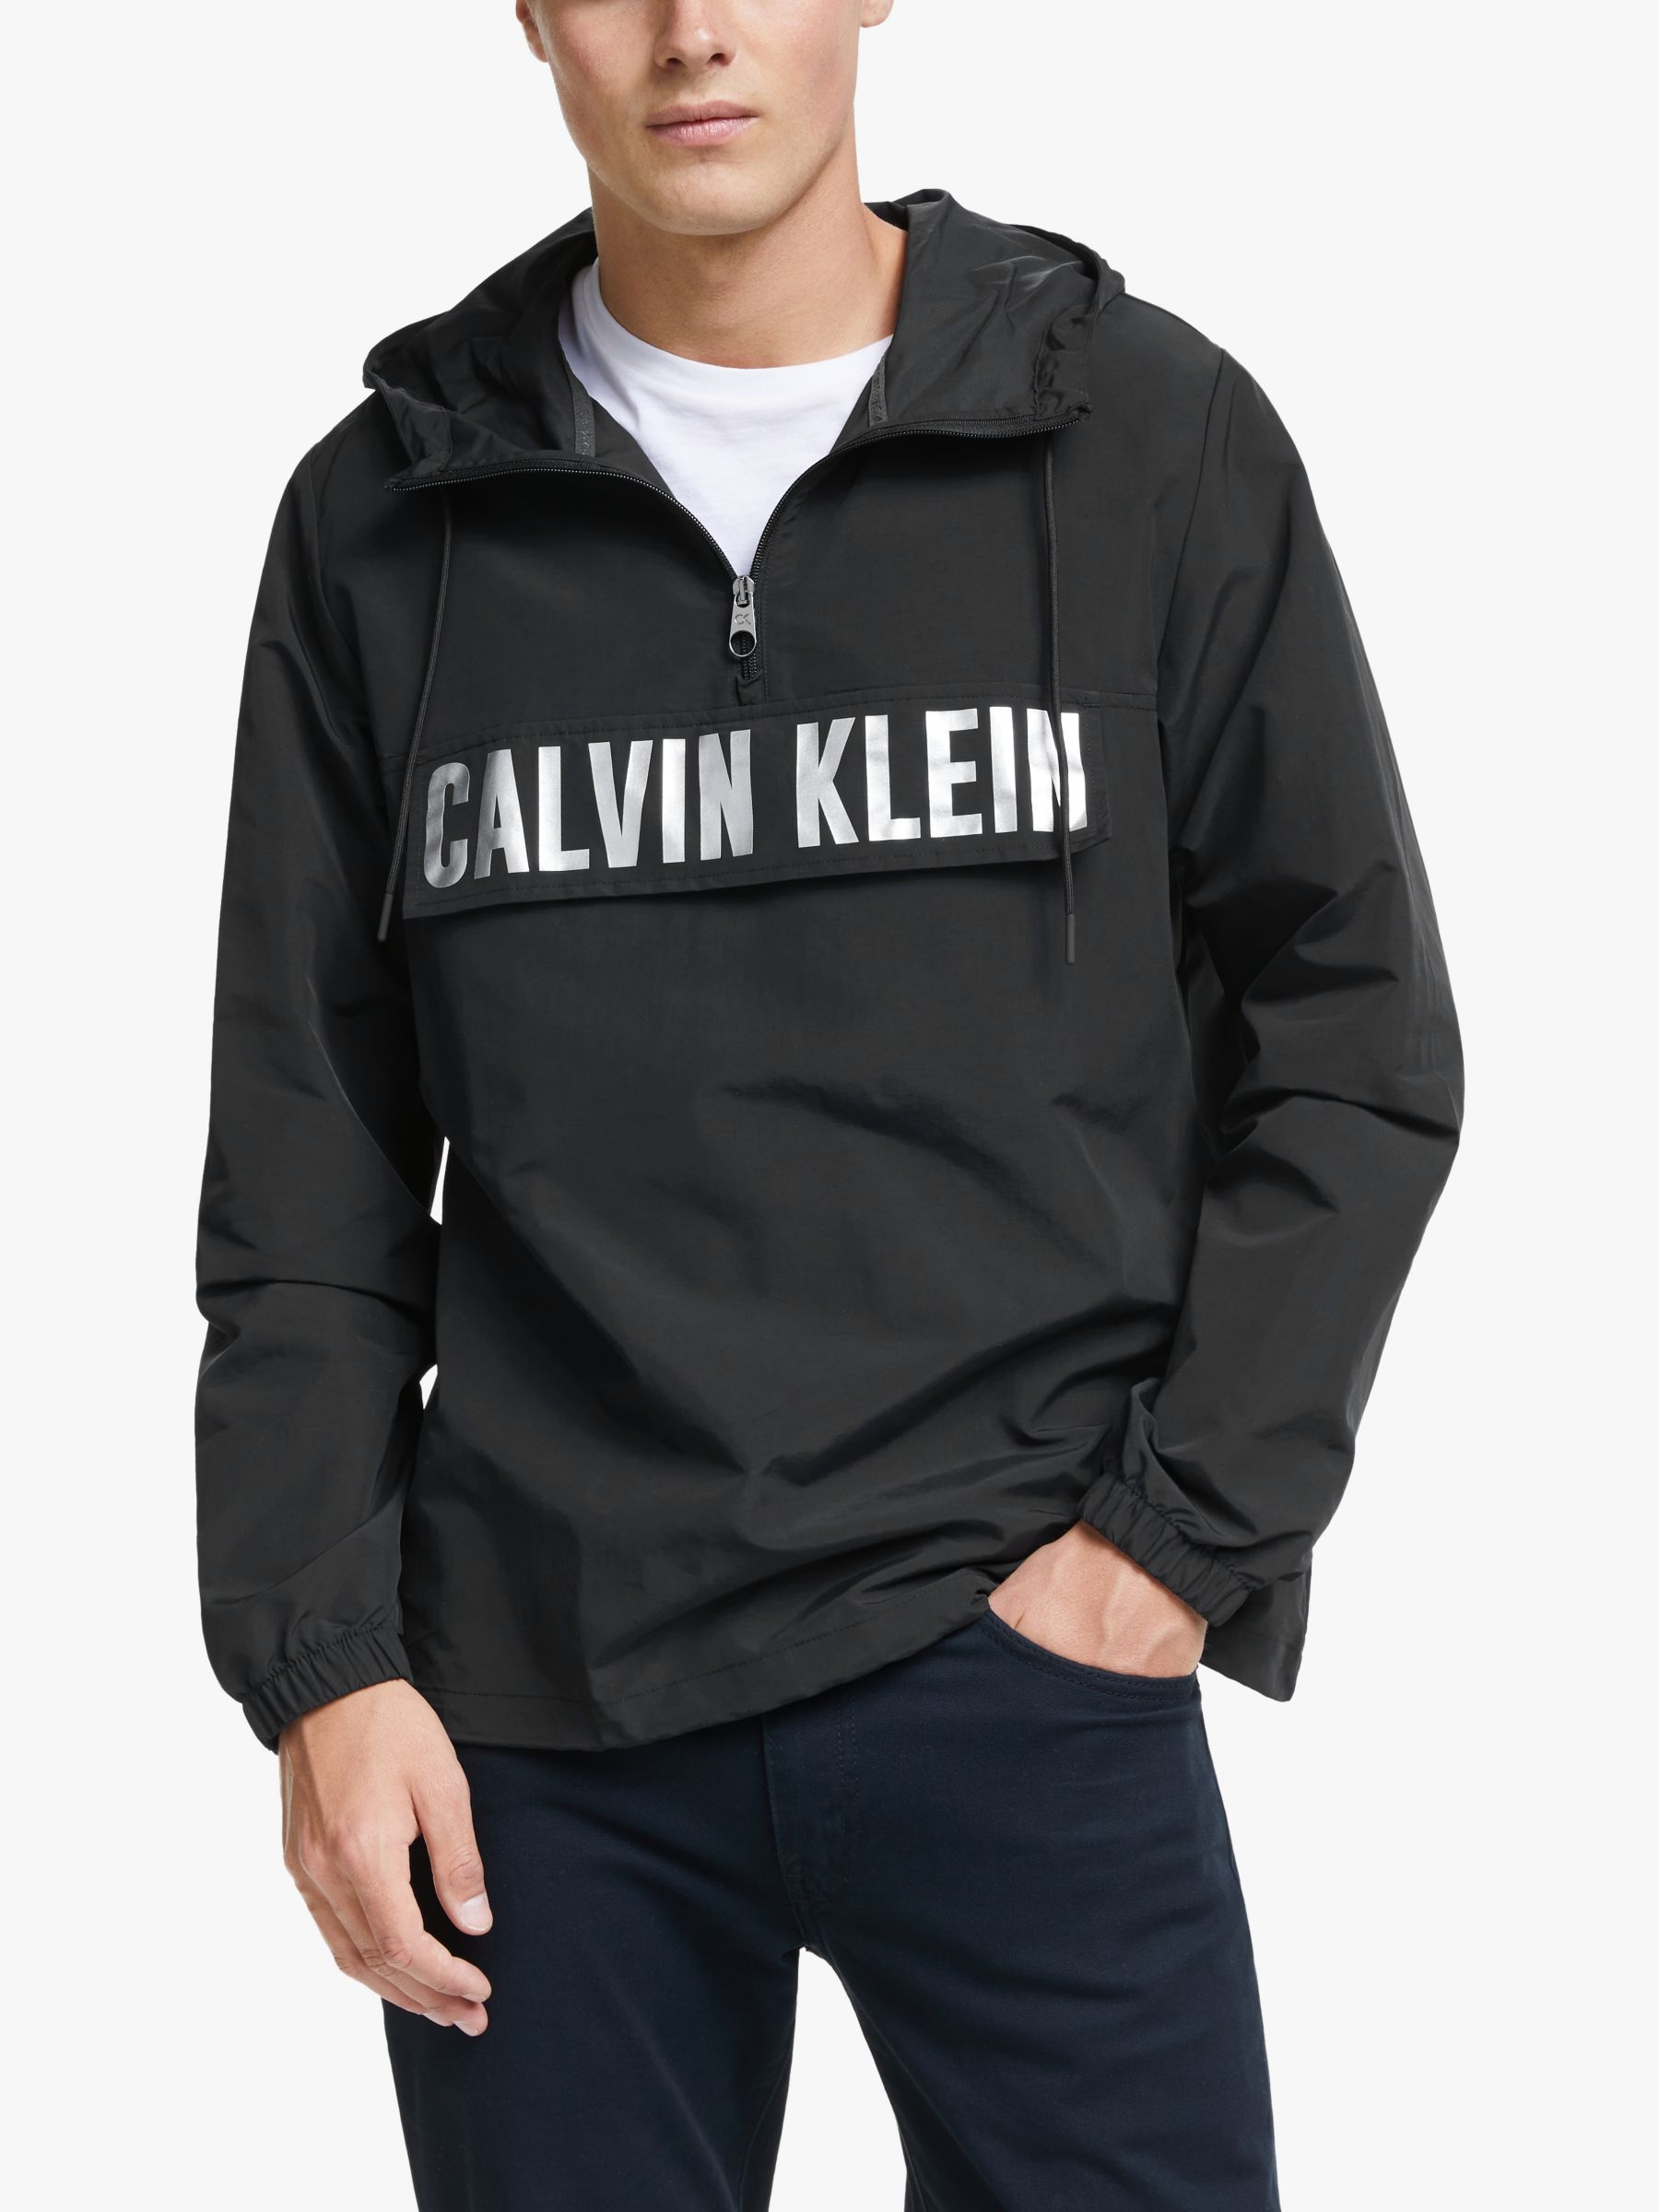 calvin klein overhead jacket